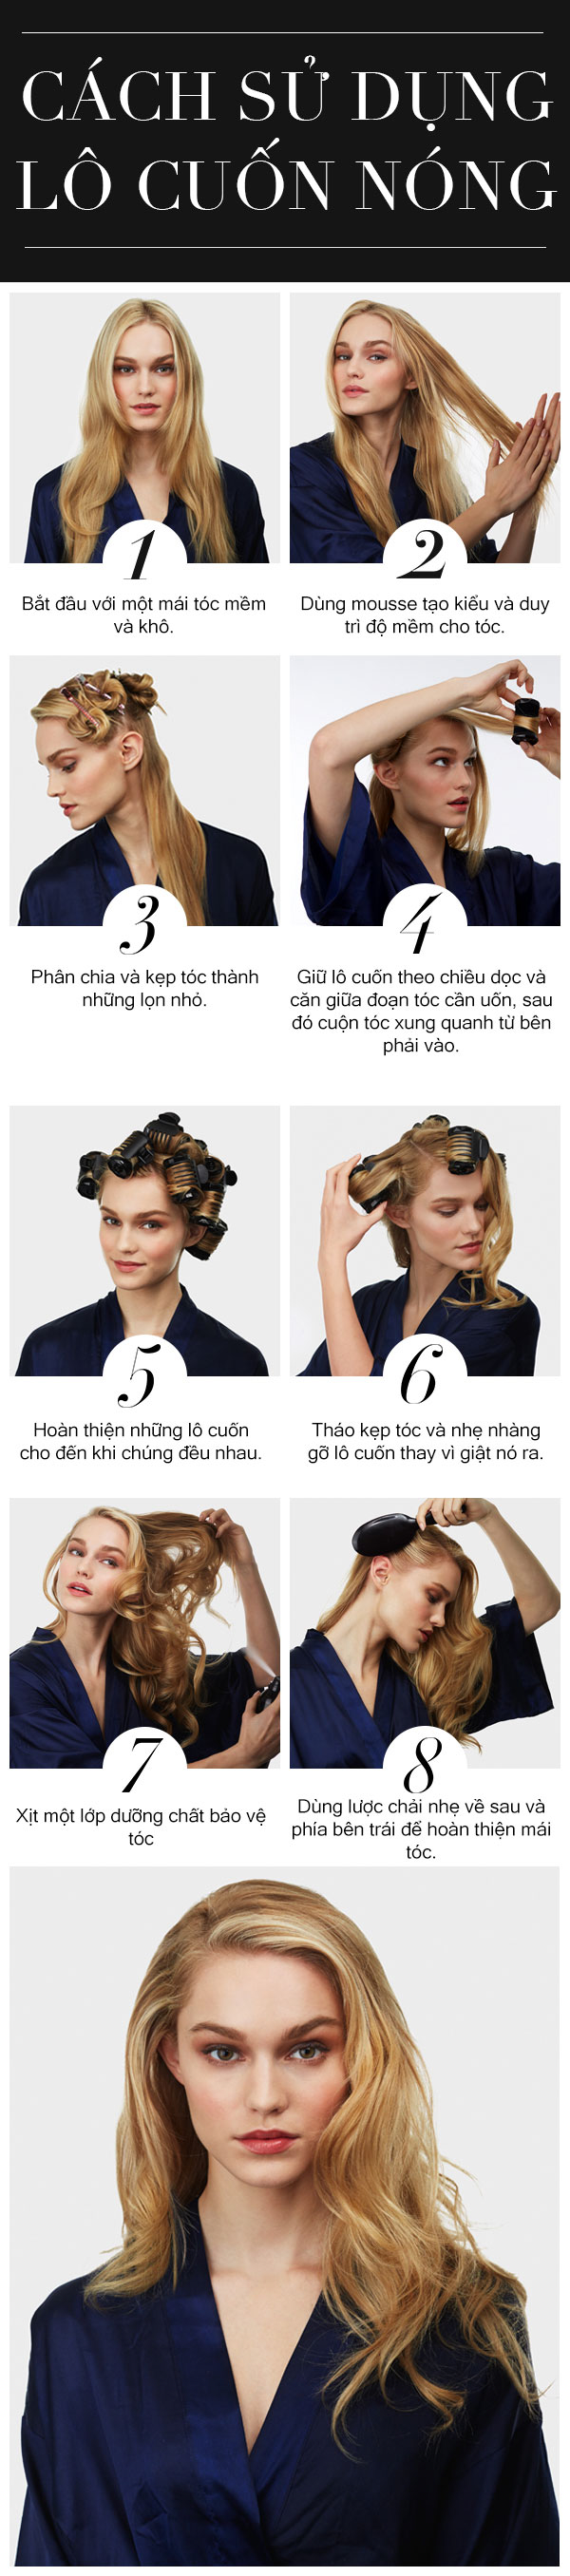 Cách sử dụng lô cuốn nóng cho tóc xoăn